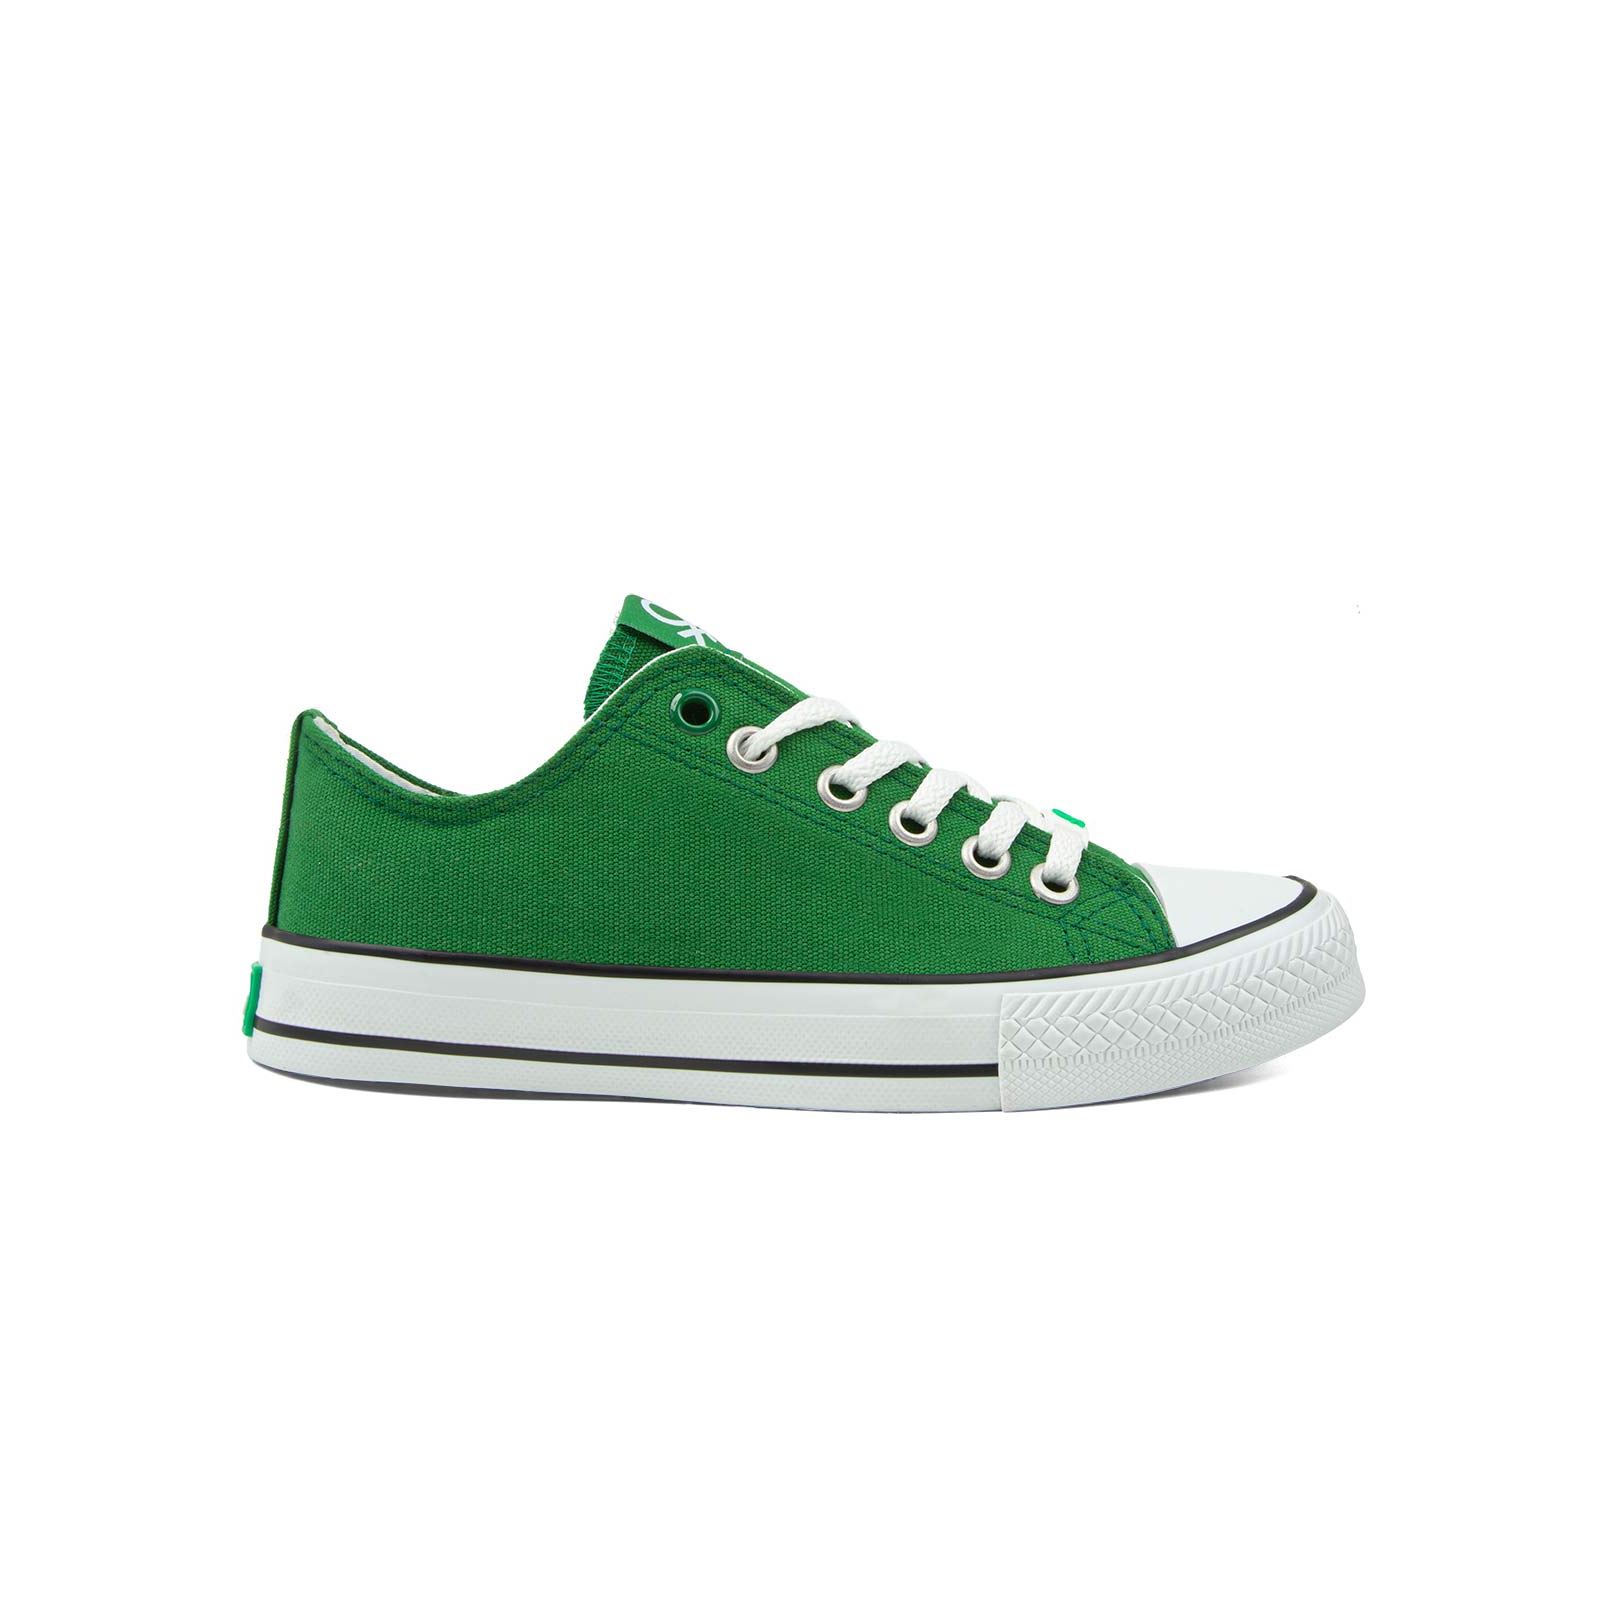 Benetton Erkek Çocuk Spor Ayakkabı 31-35 Numara Yeşil